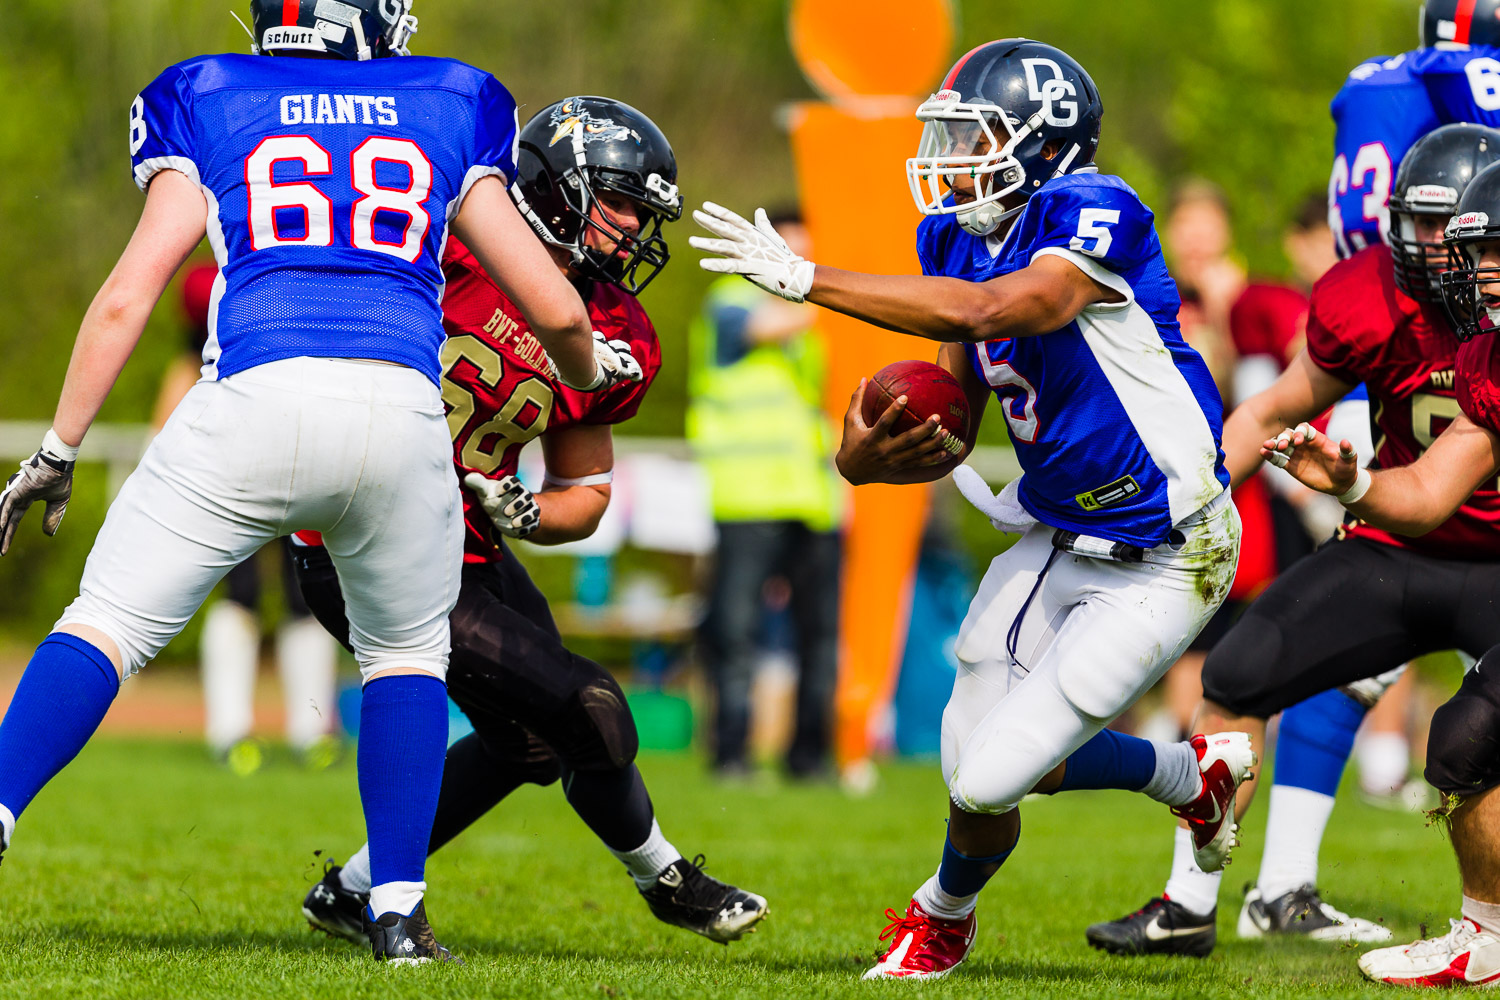 GFLJ 2014 - Dortmund Giants U19 vs. Cologne Falcons U19